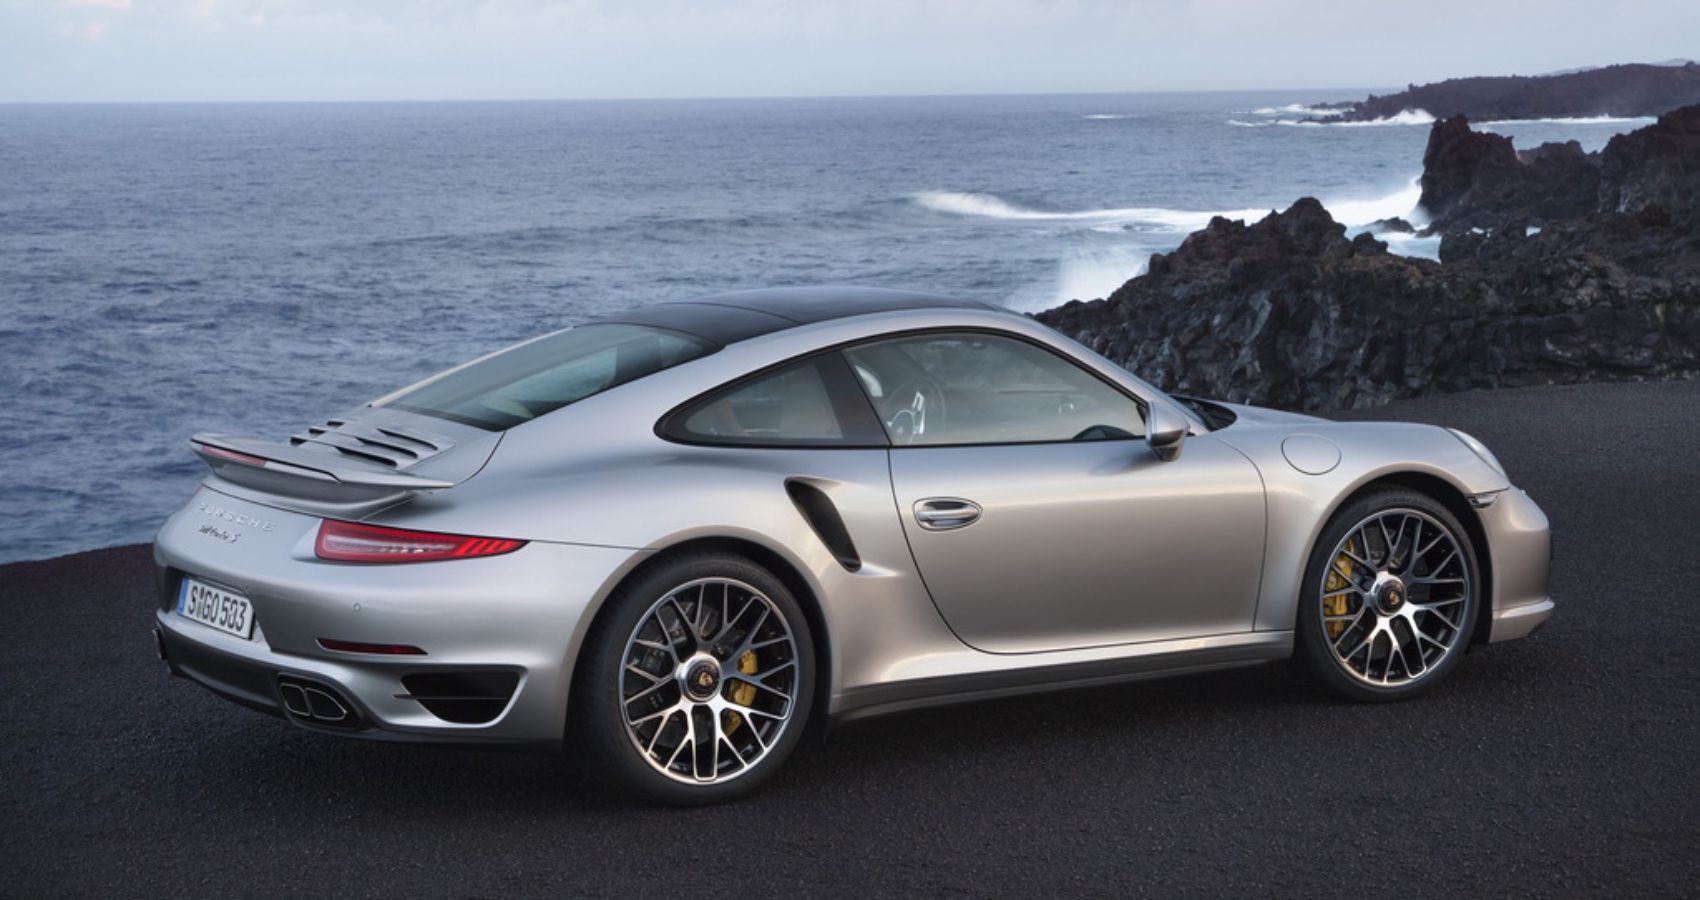 2013_Porsche_911TurboS-side view